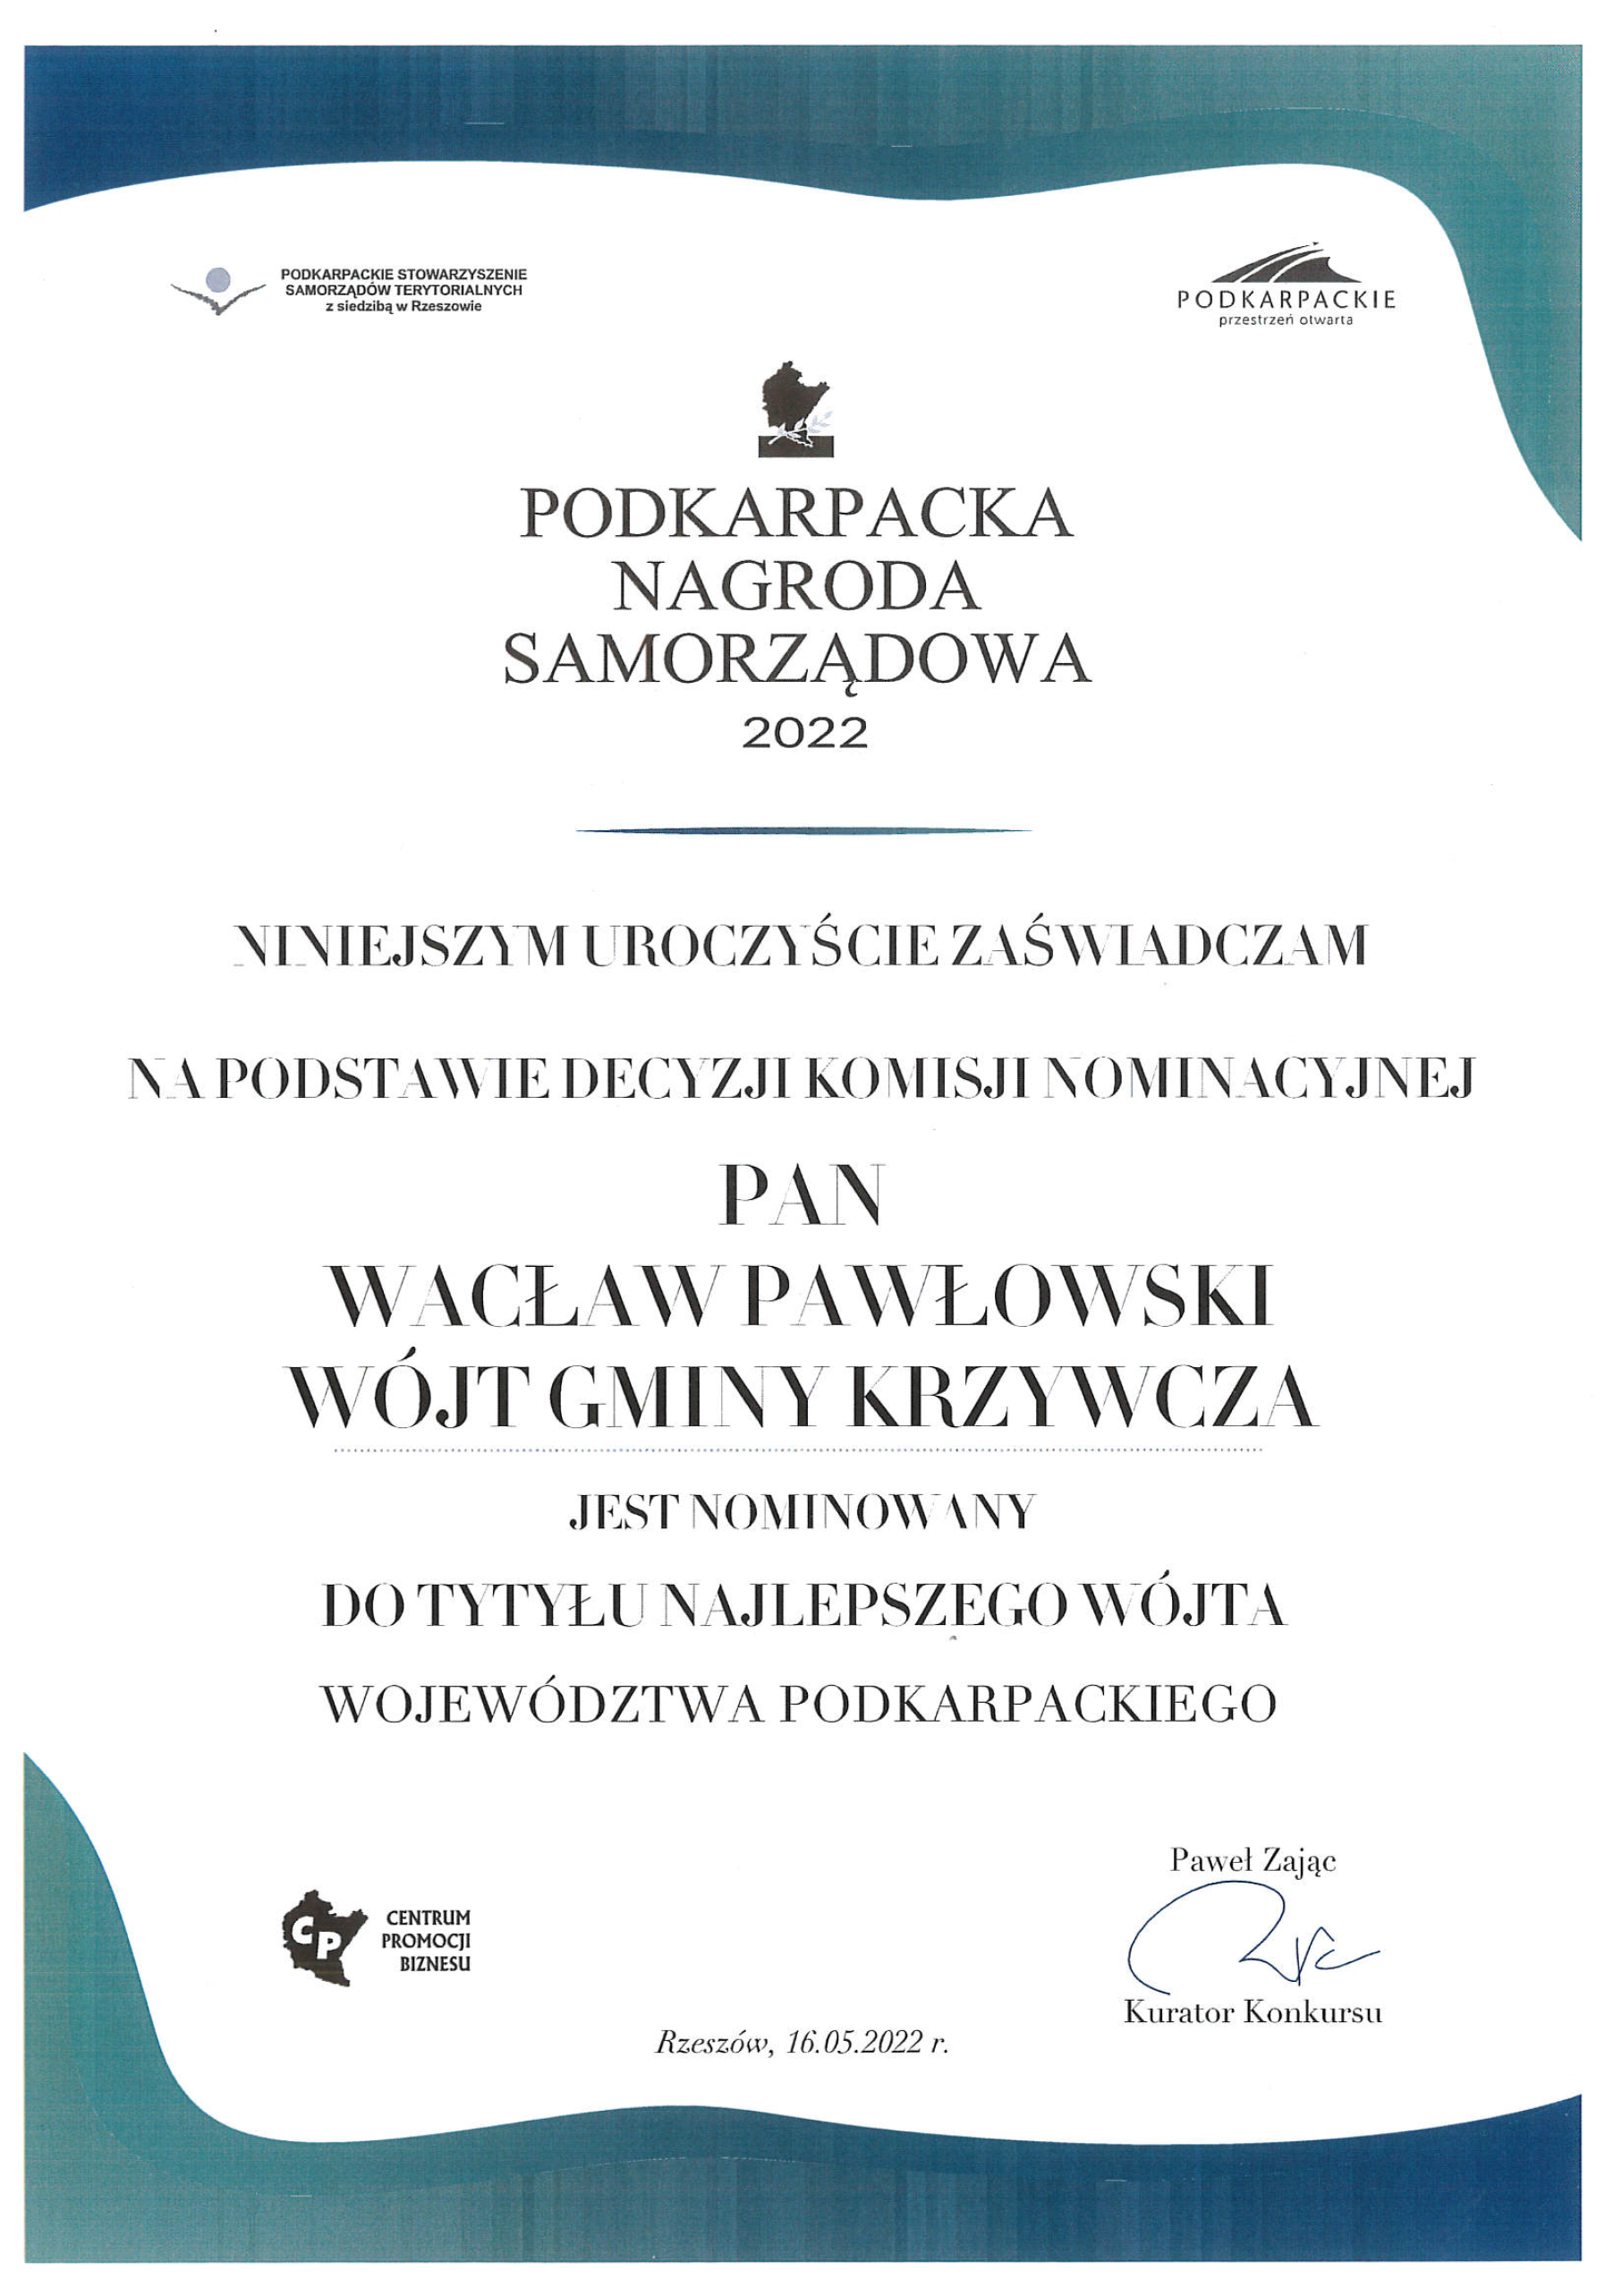 Nominacja do tytułu najlepszego wójta dla Pana Wacława Pawłowskiego